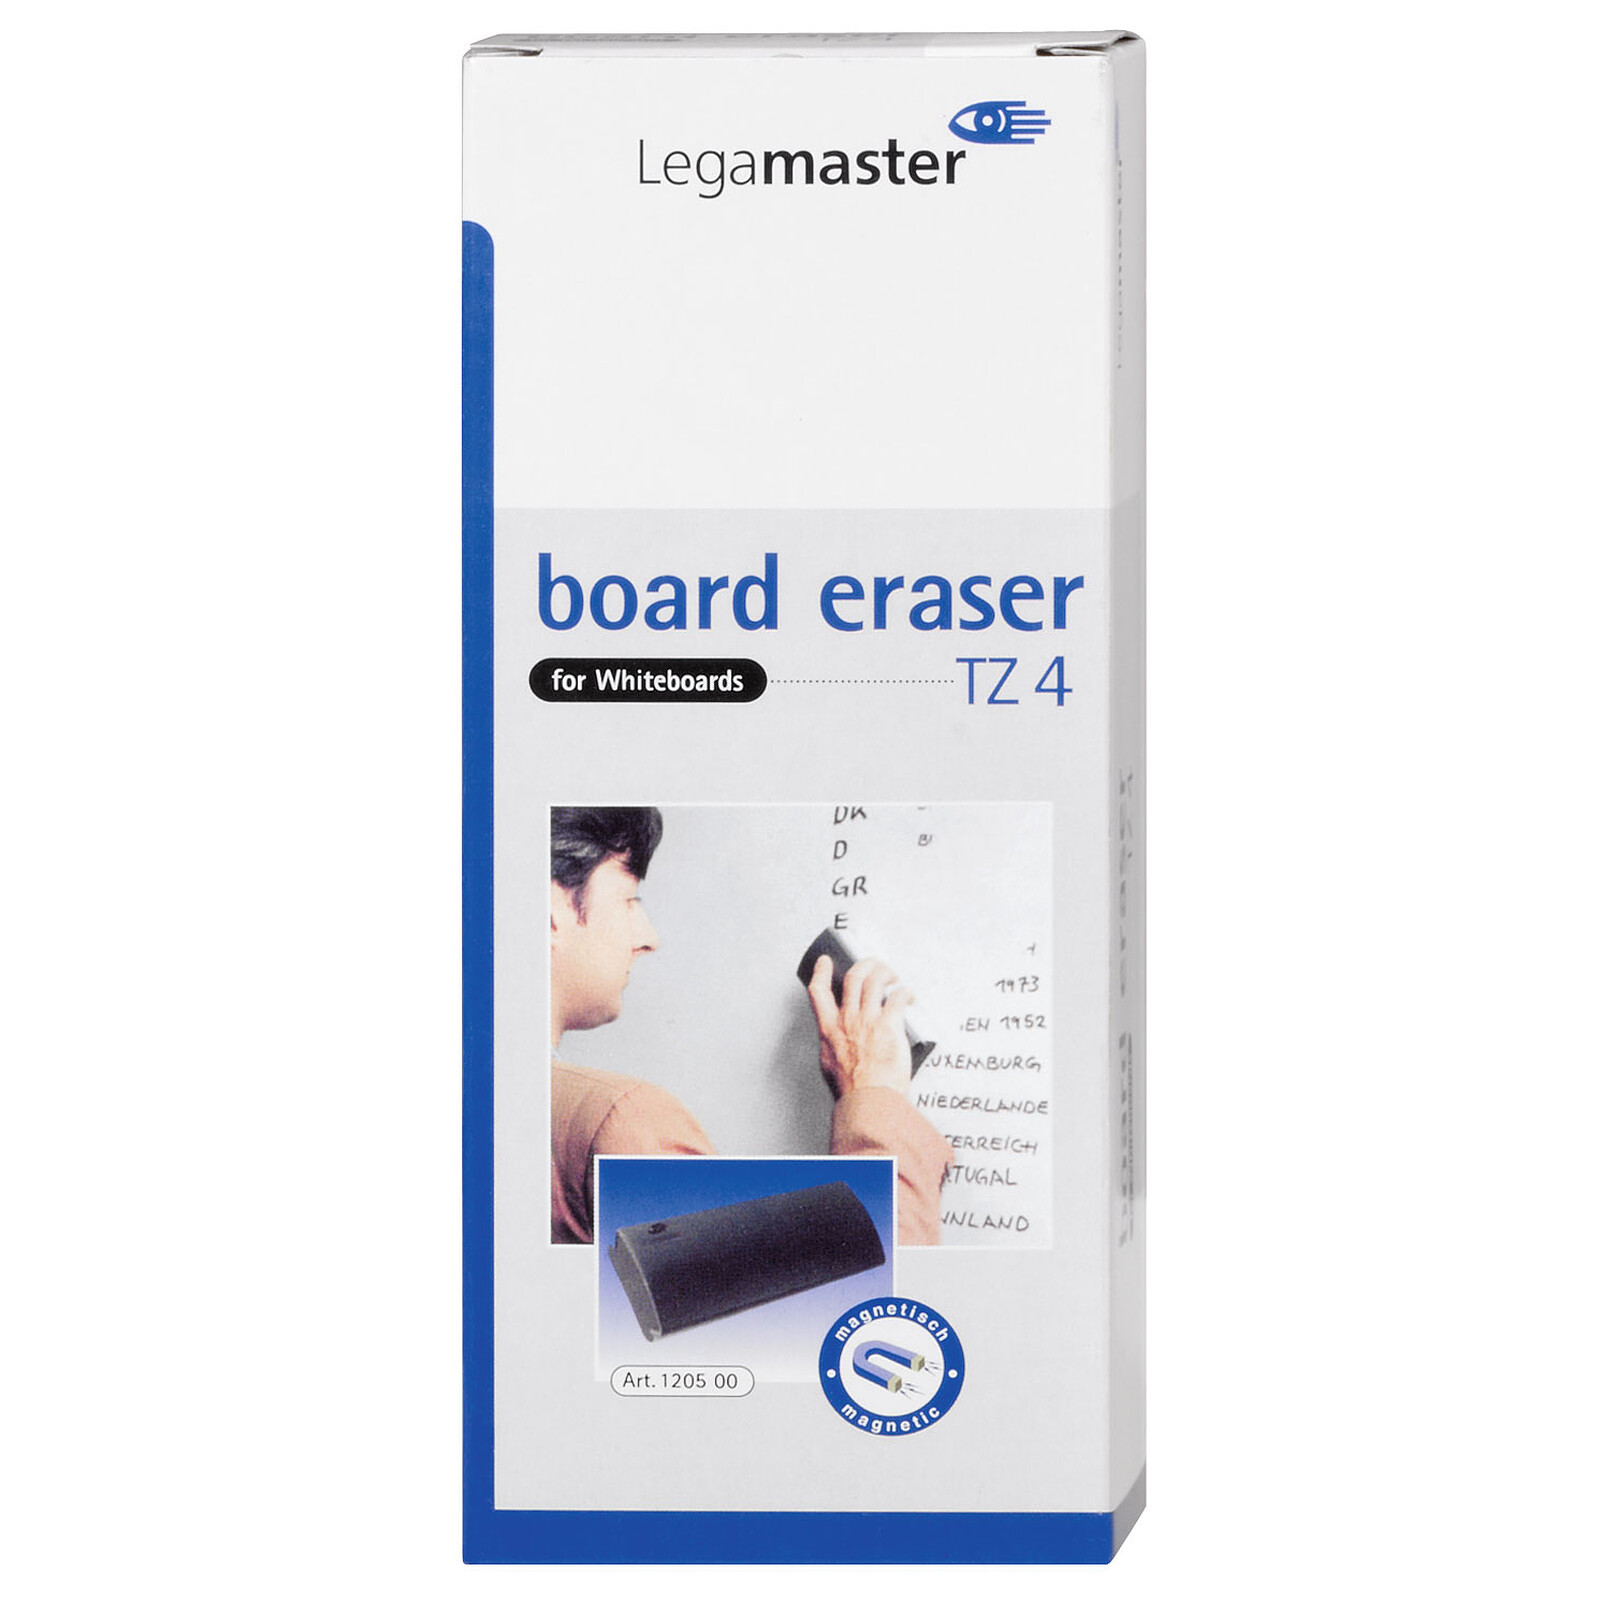 Legamaster Magic-Chart feuille transparente Paperchart 60 x 80 cm -  Accessoires tableau - Garantie 3 ans LDLC